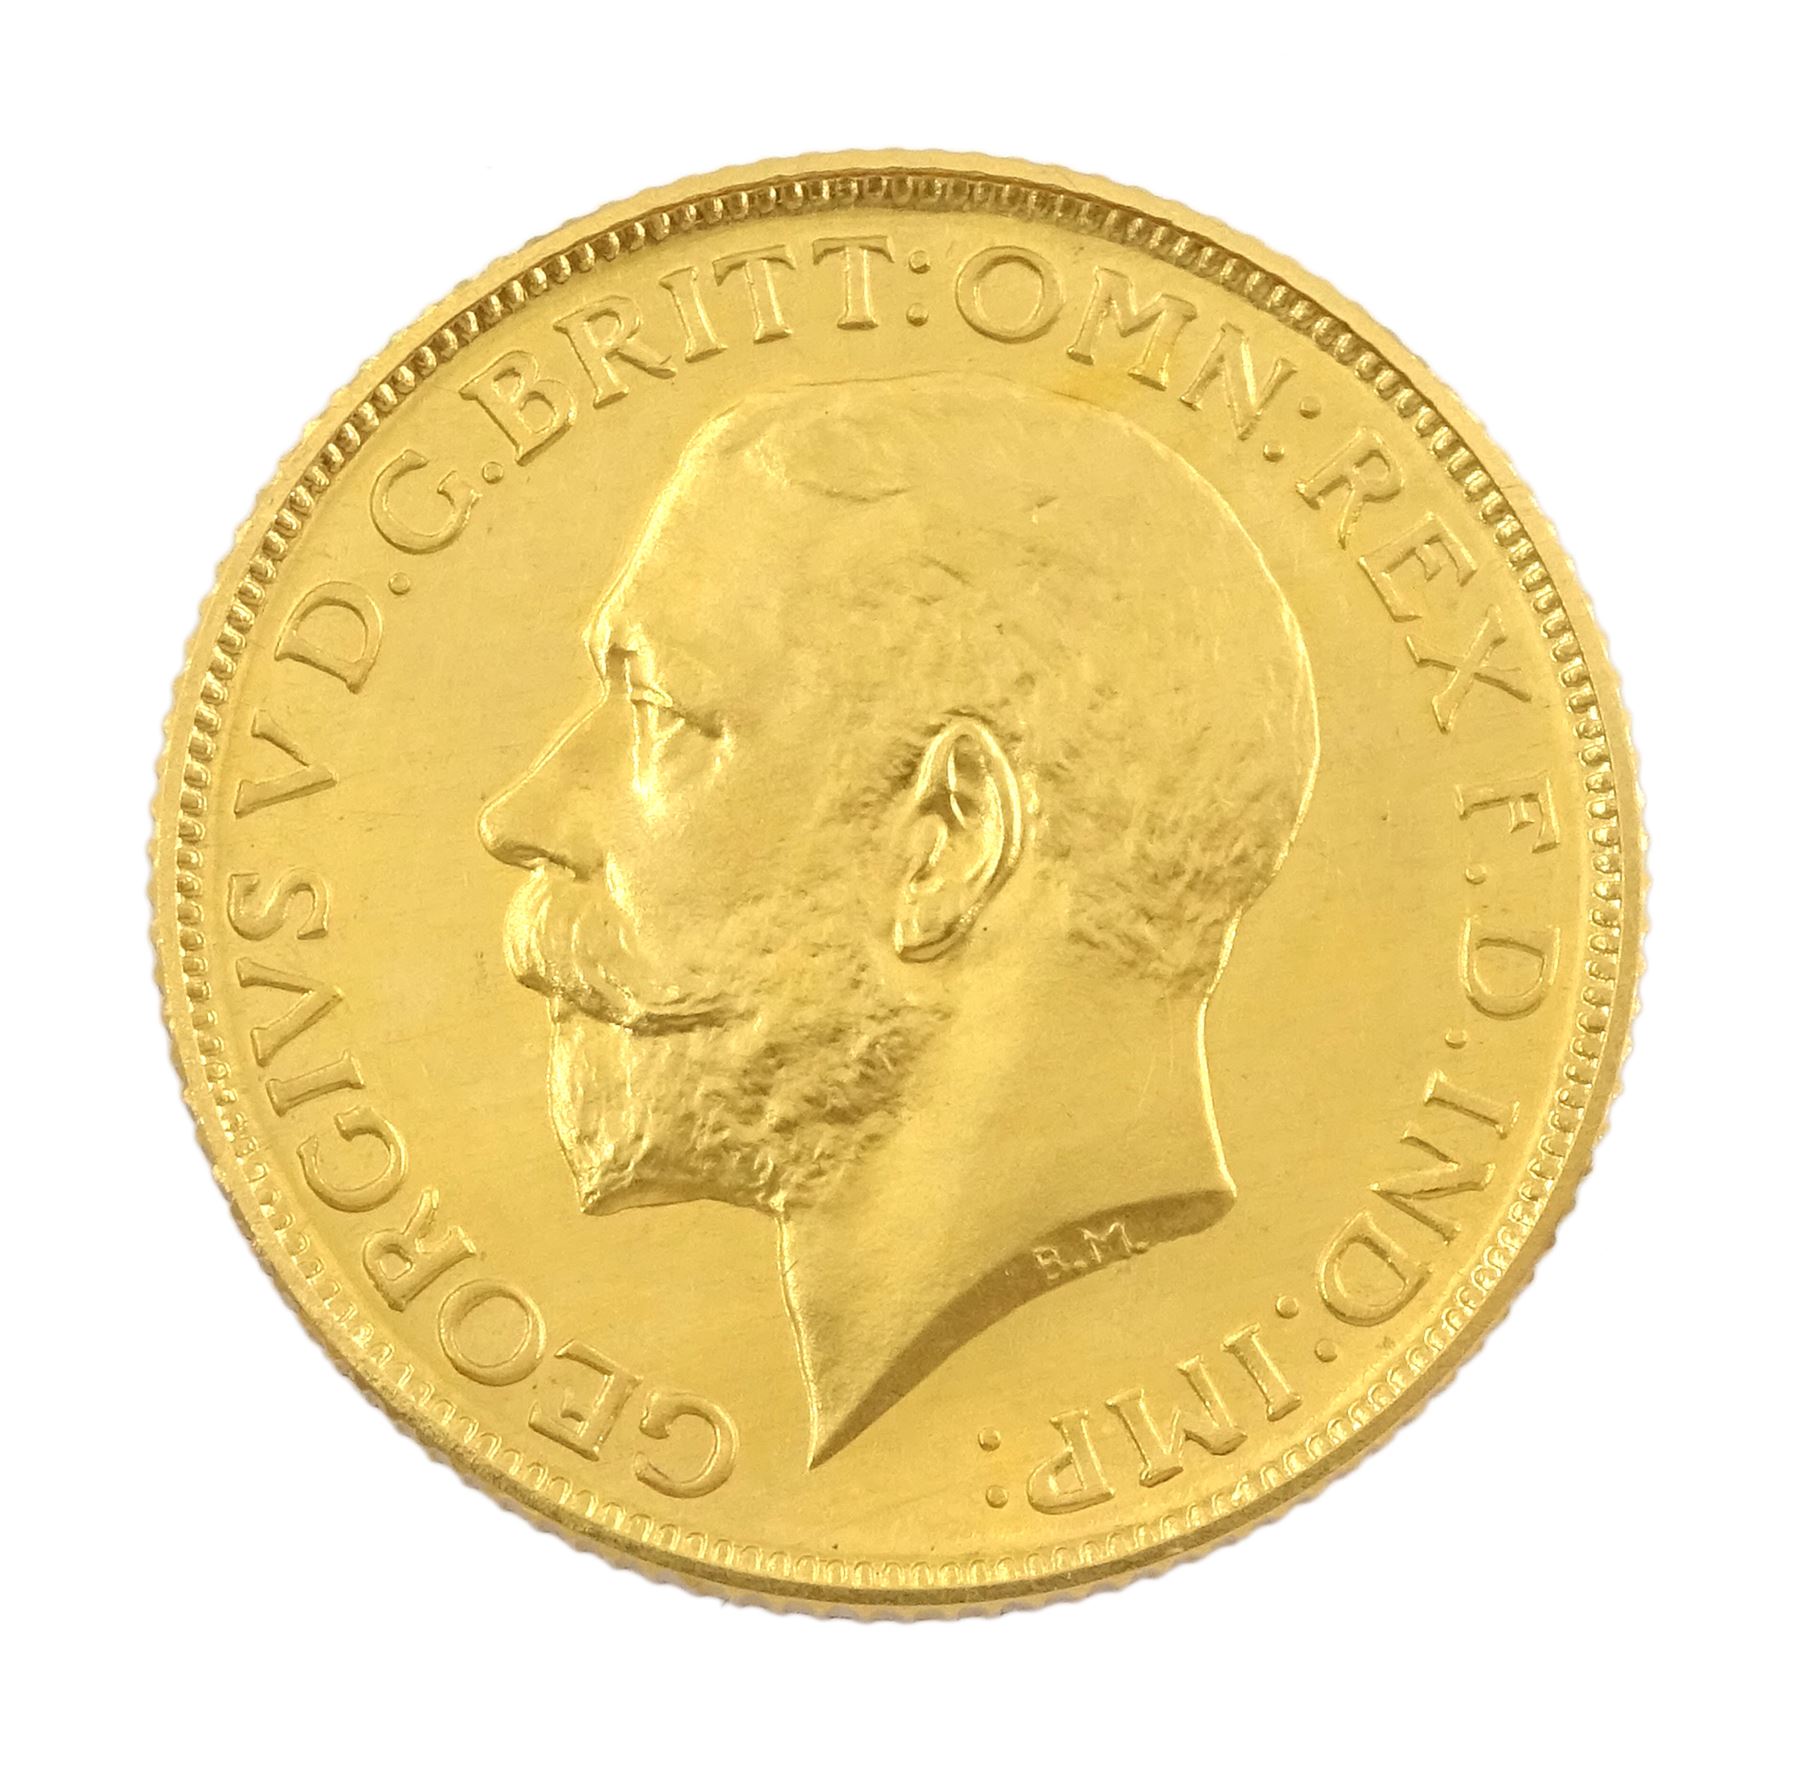 King George V 1911 proof short coin set - Image 4 of 24